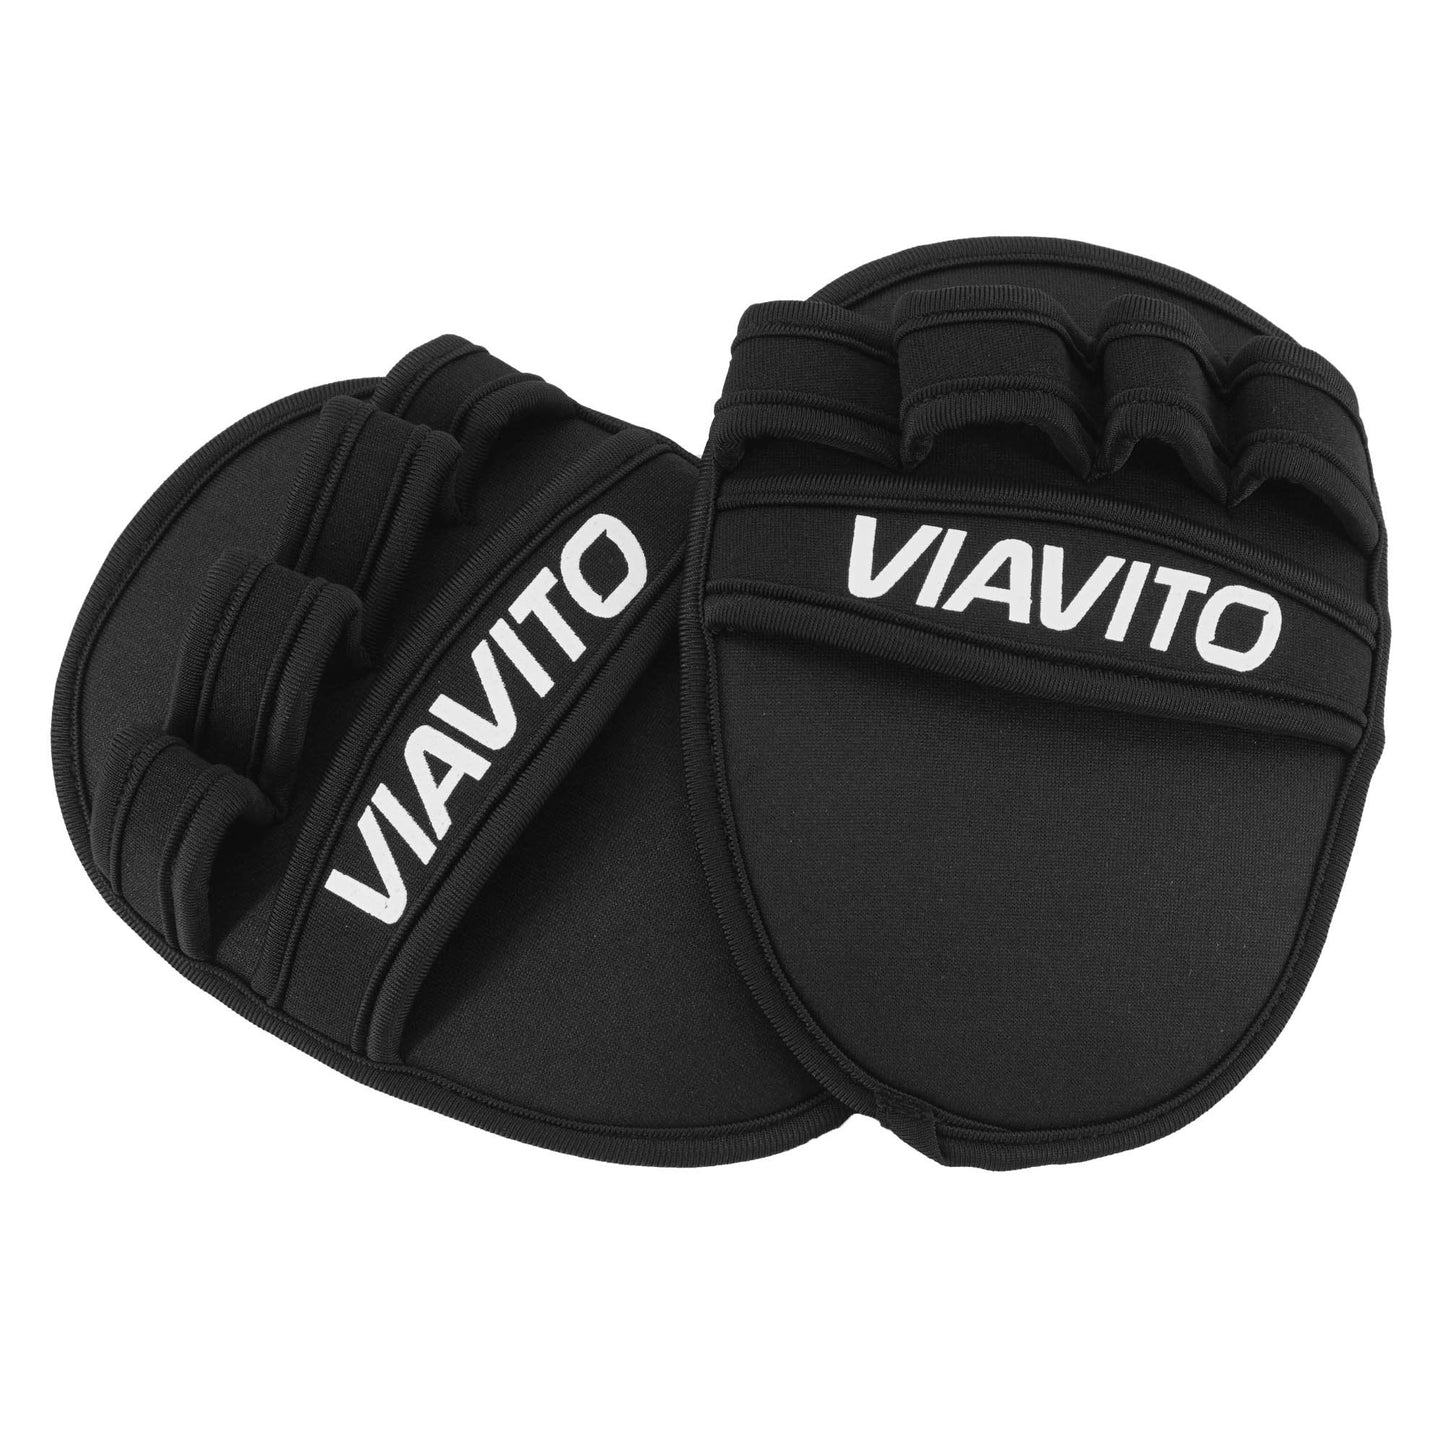 |Viavito Weight Lifting Grip Pad|